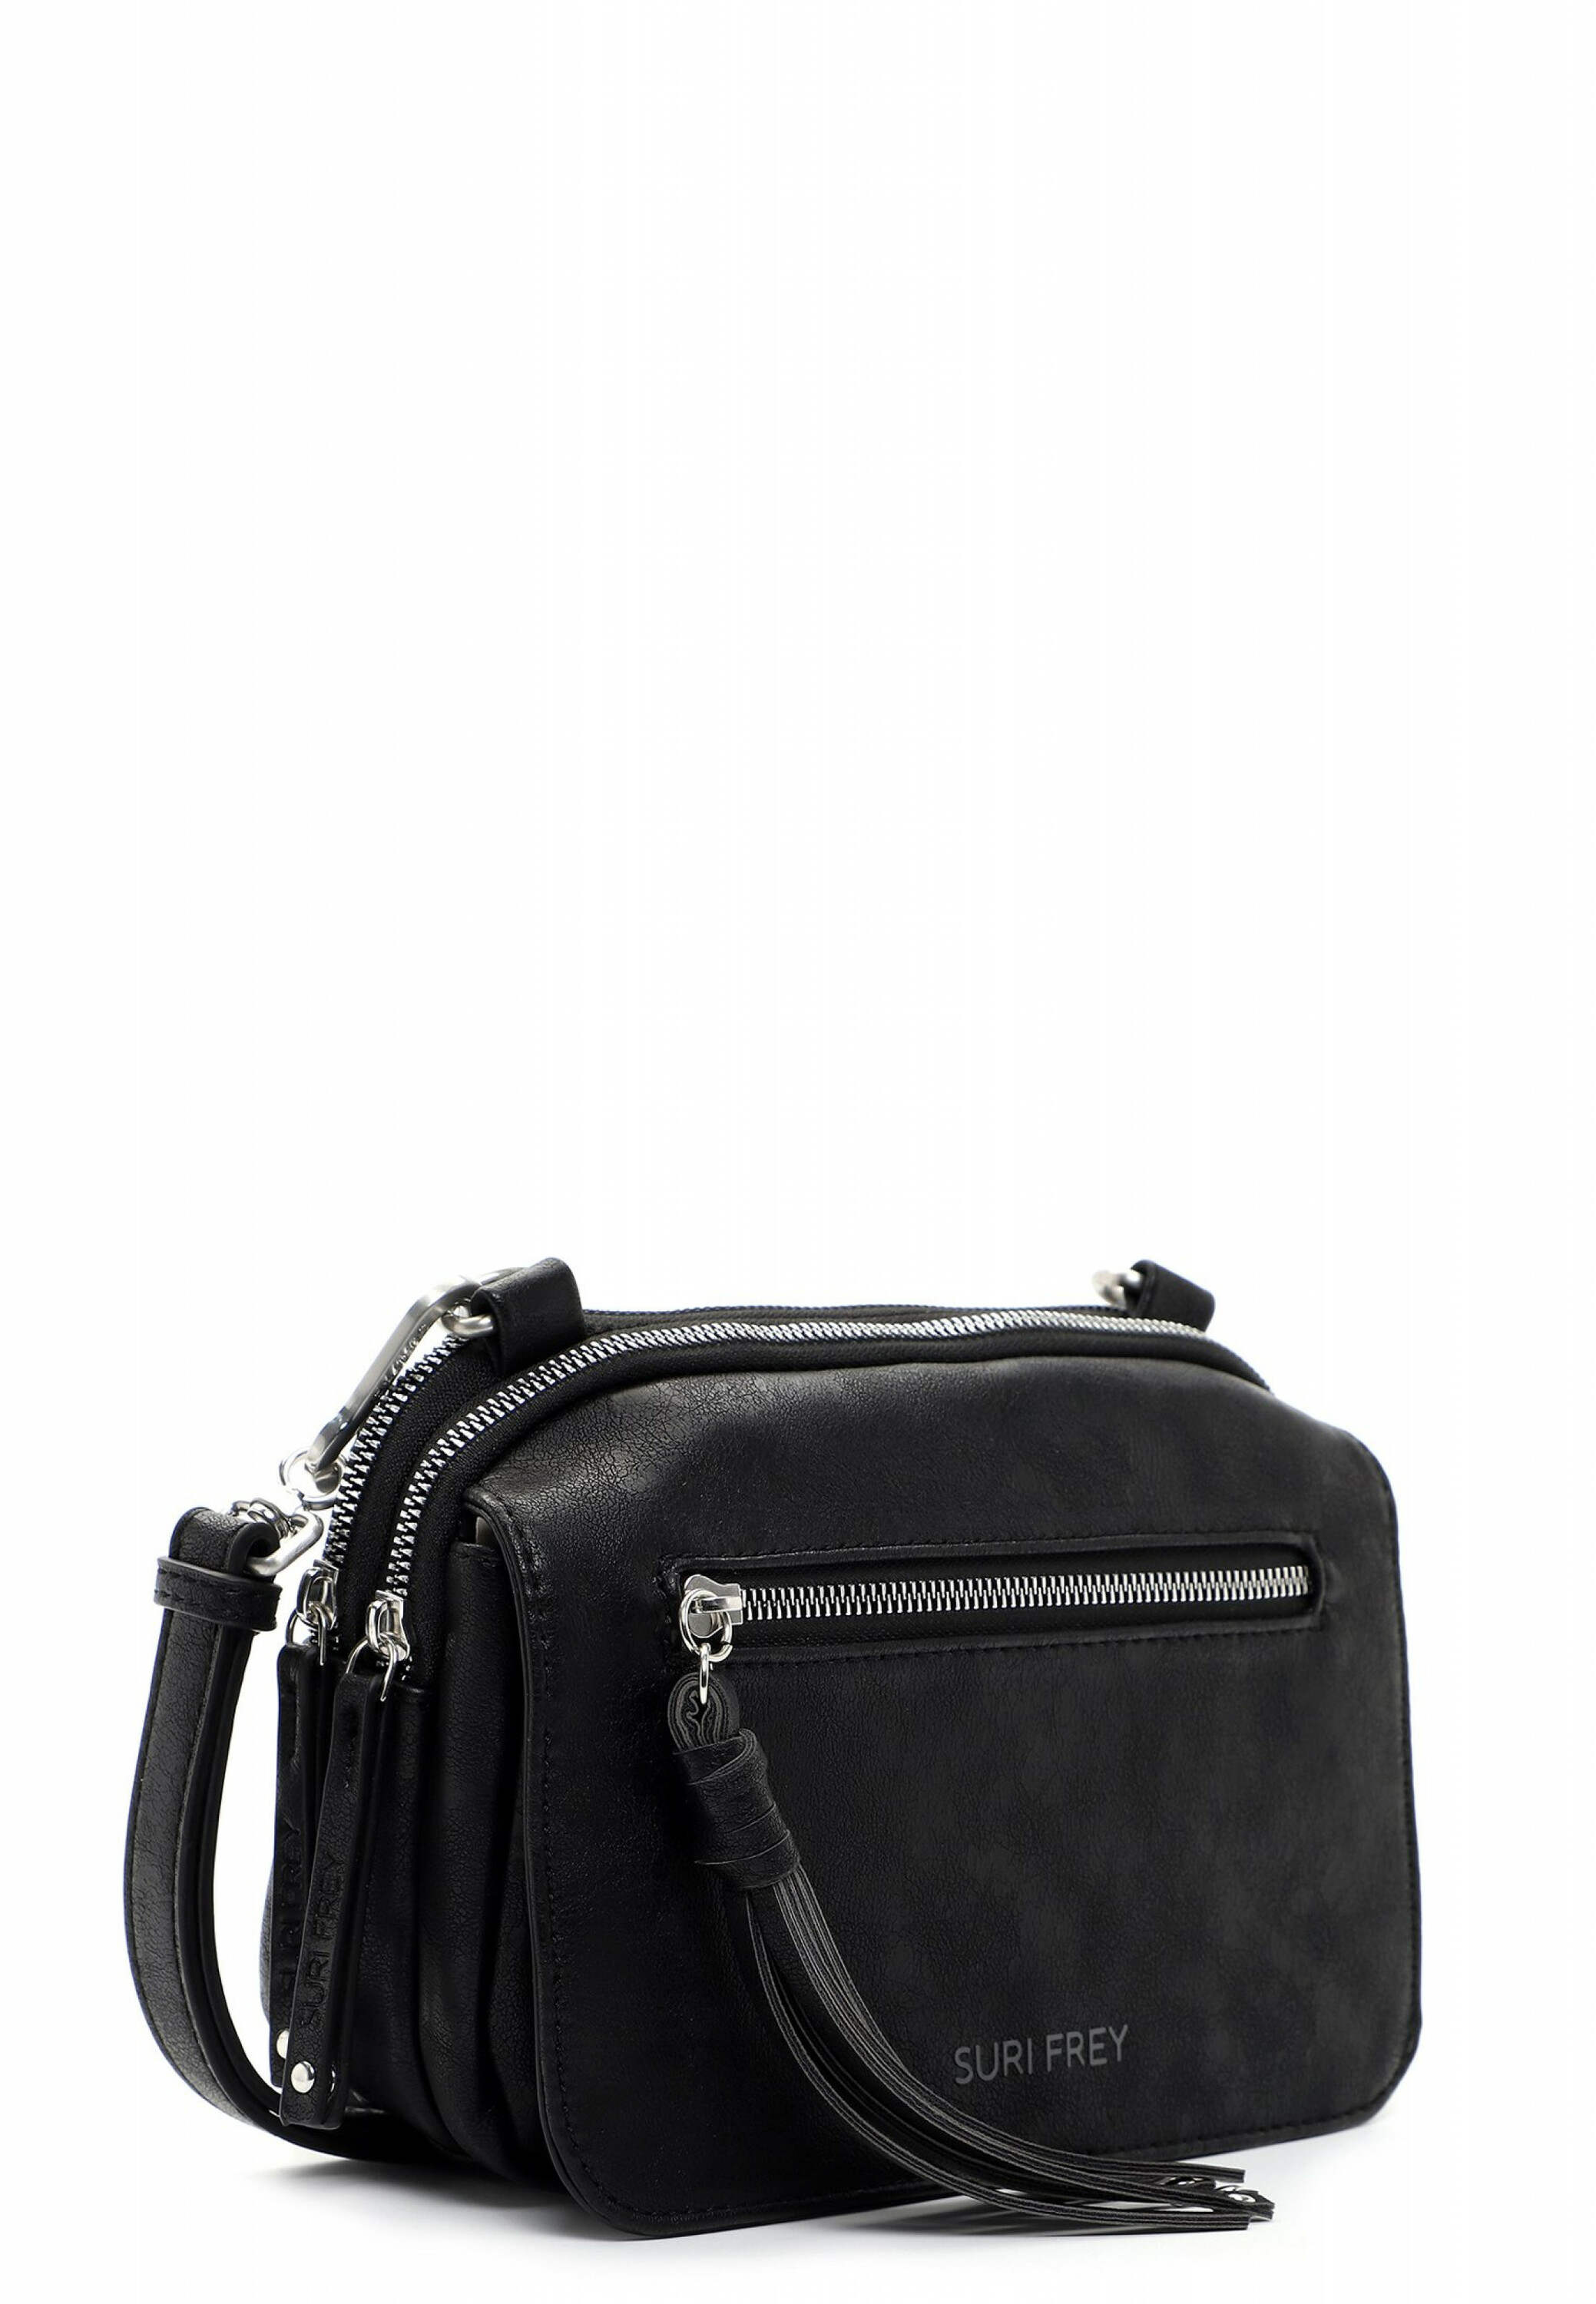 Suri Frey Lotty-Handtasche mit Reißverschluss, black